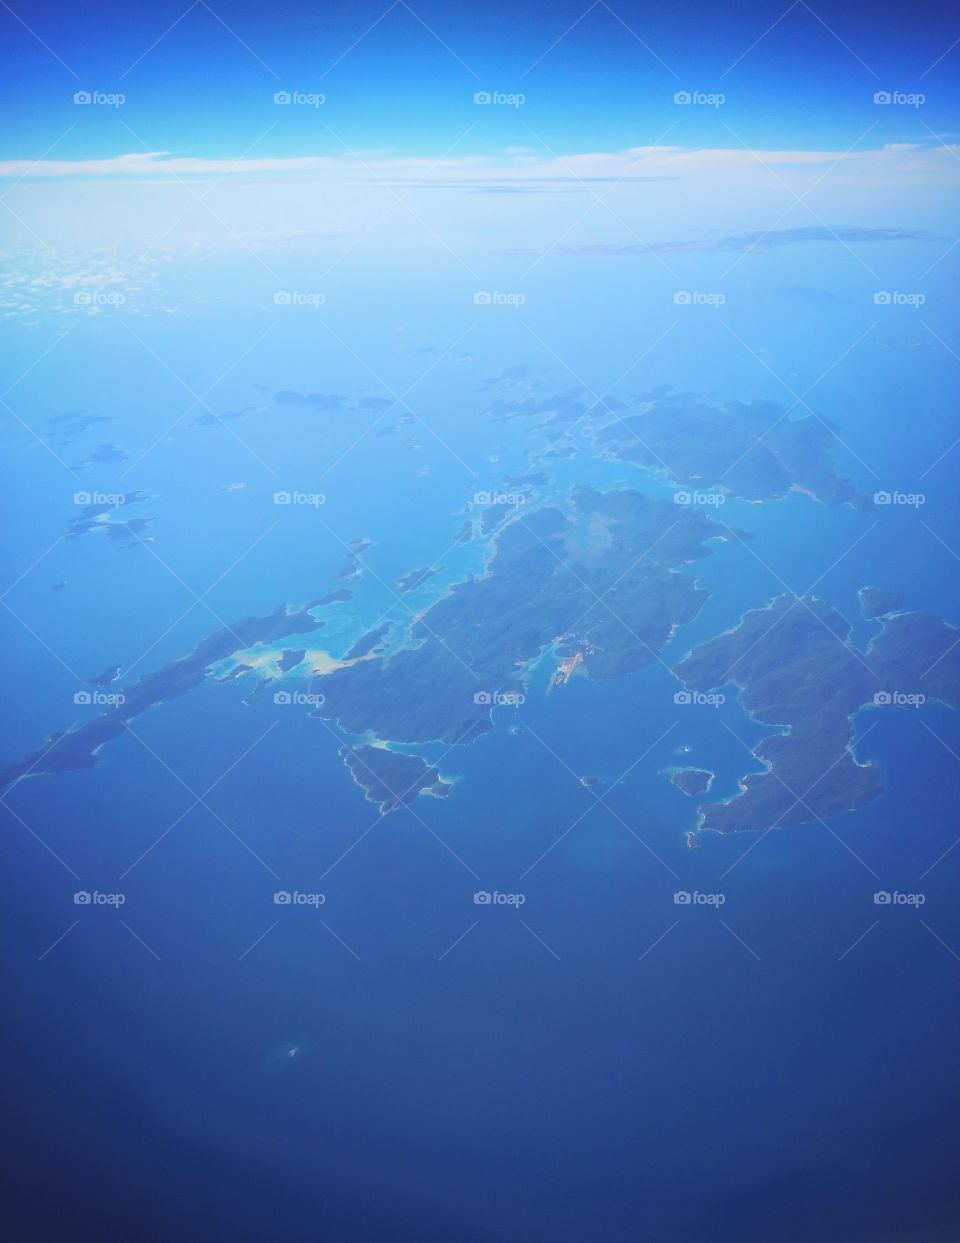 Isolated Island